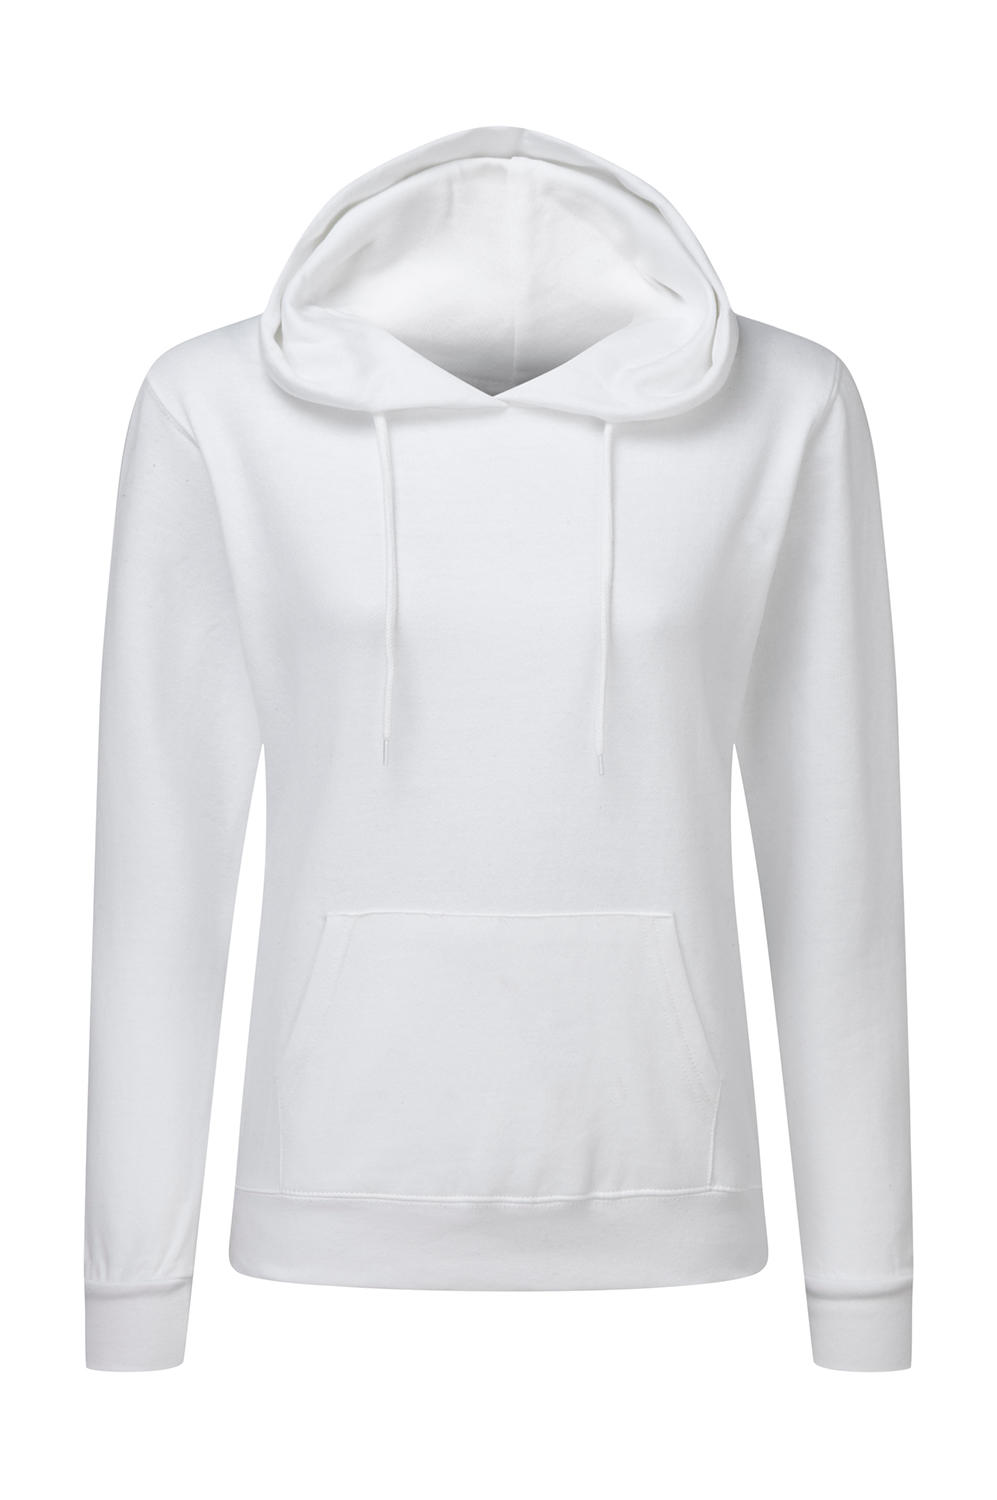  Ladies Hooded Sweatshirt in Farbe White